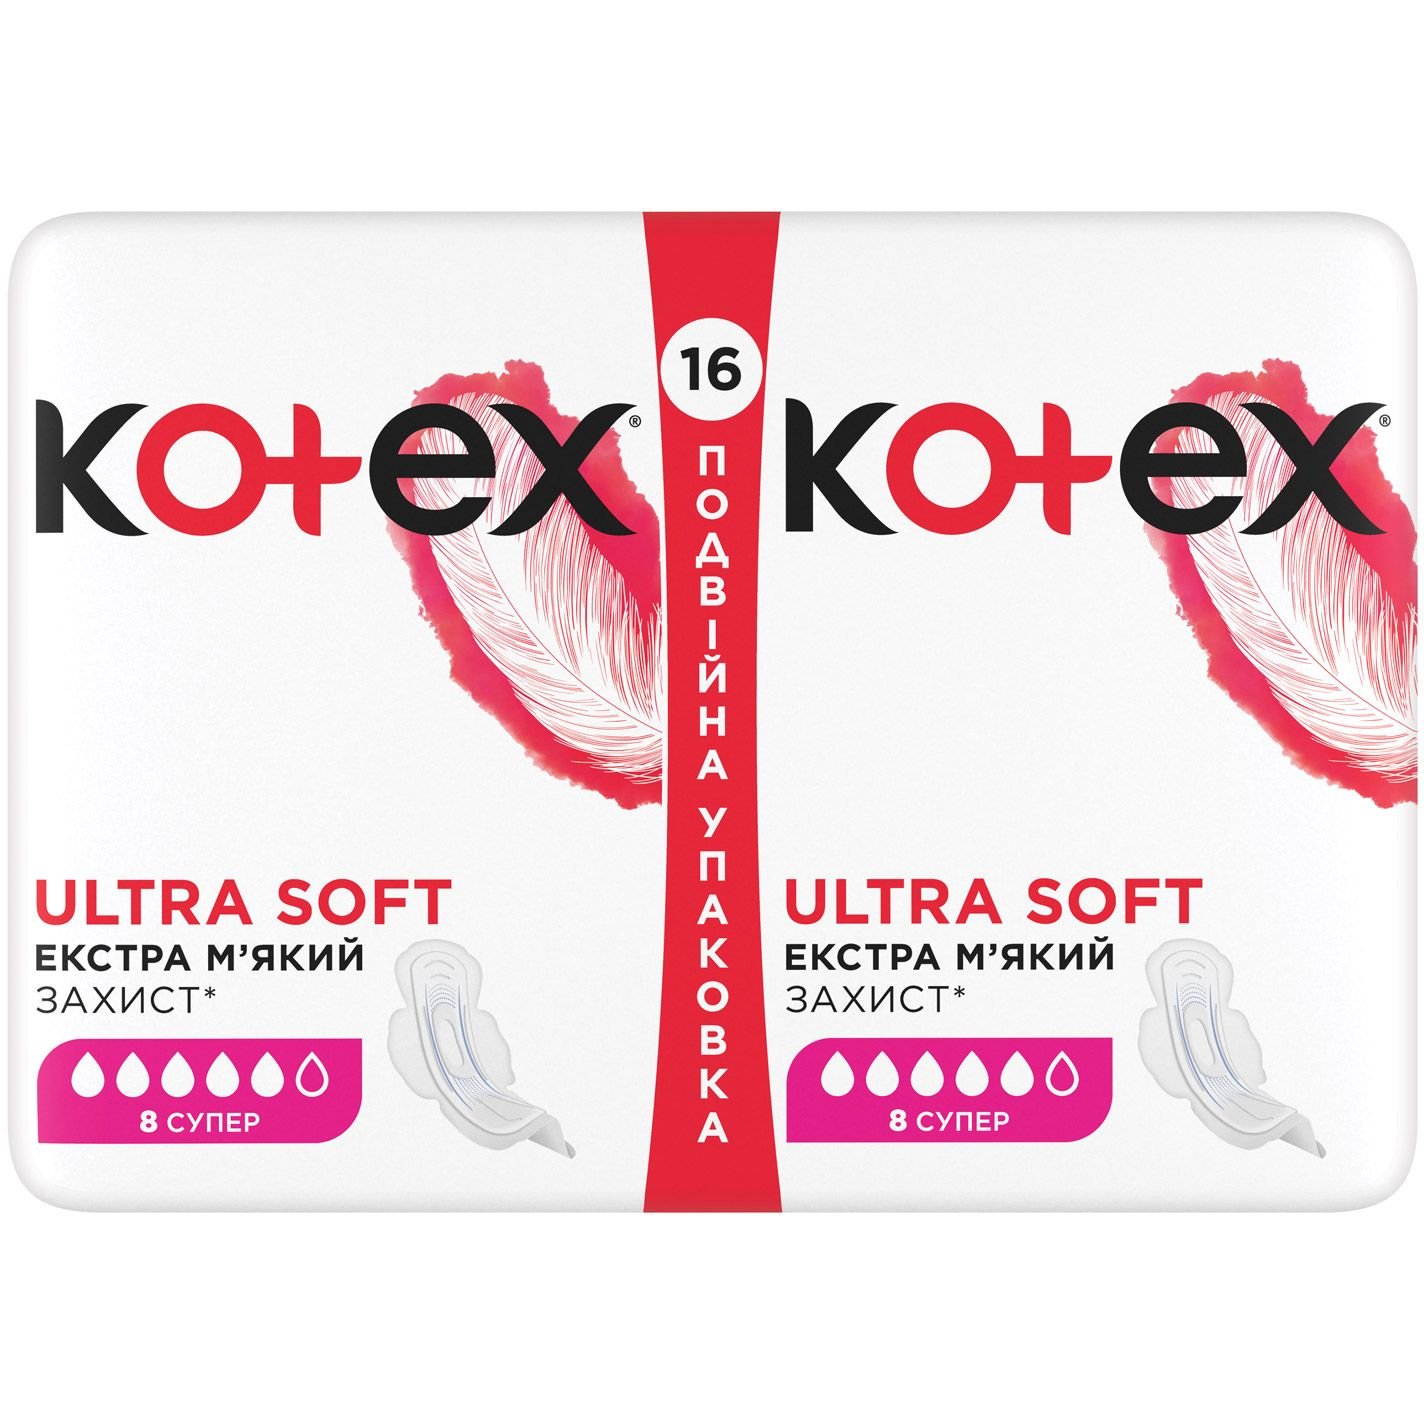 Гигиенические прокладки Kotex Ultra Soft Super 16 шт. - фото 2